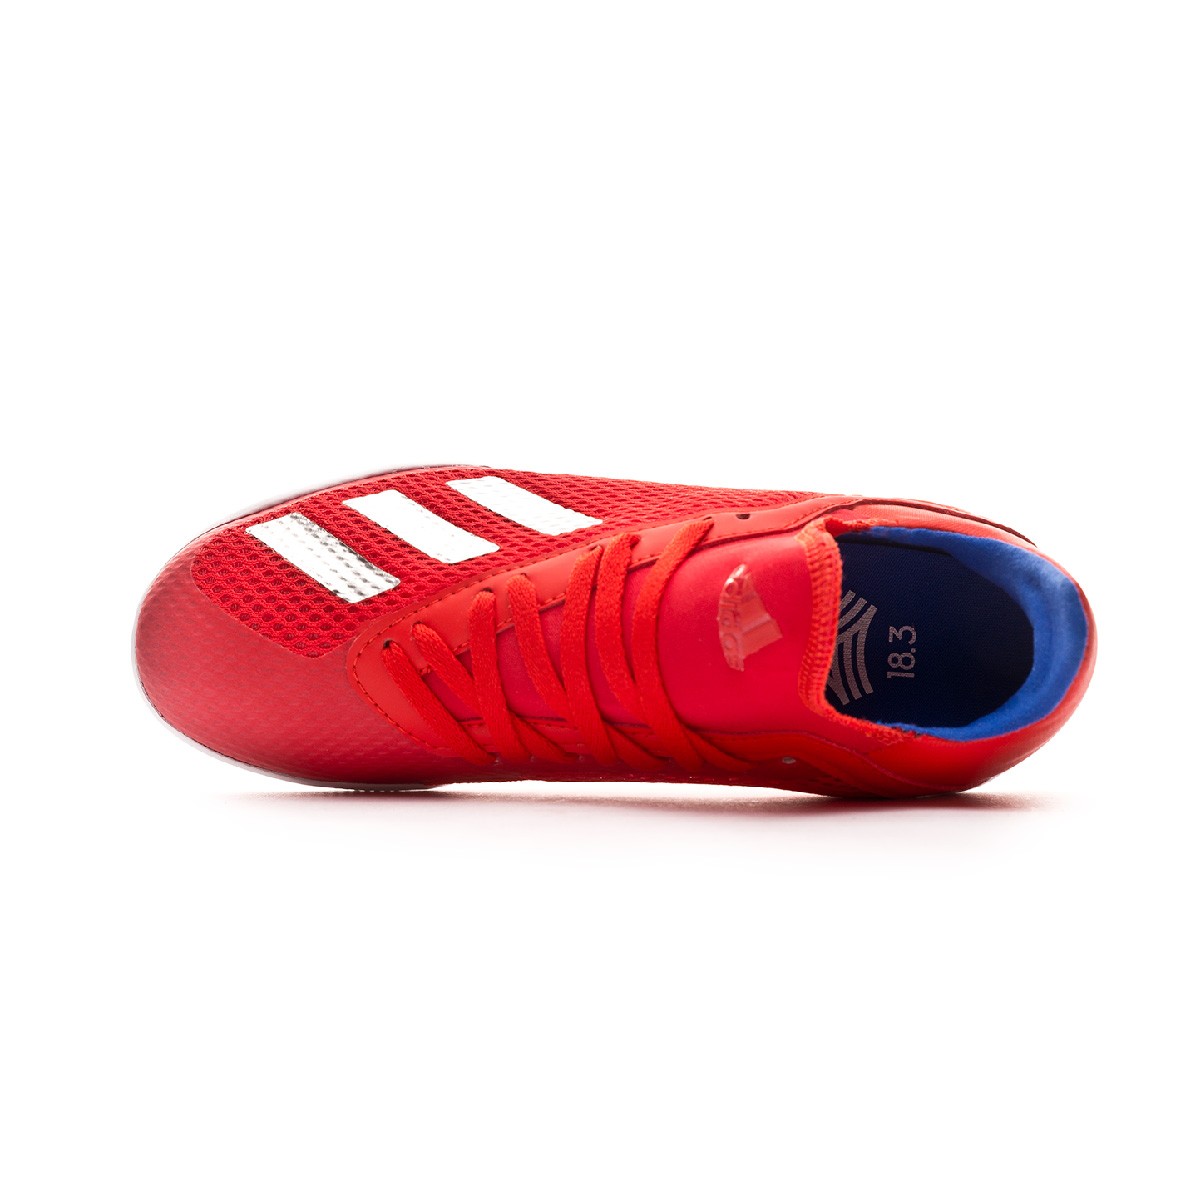 Futsal Boot Adidas X Tango 18 3 In Nino Active Red Silver Metallic